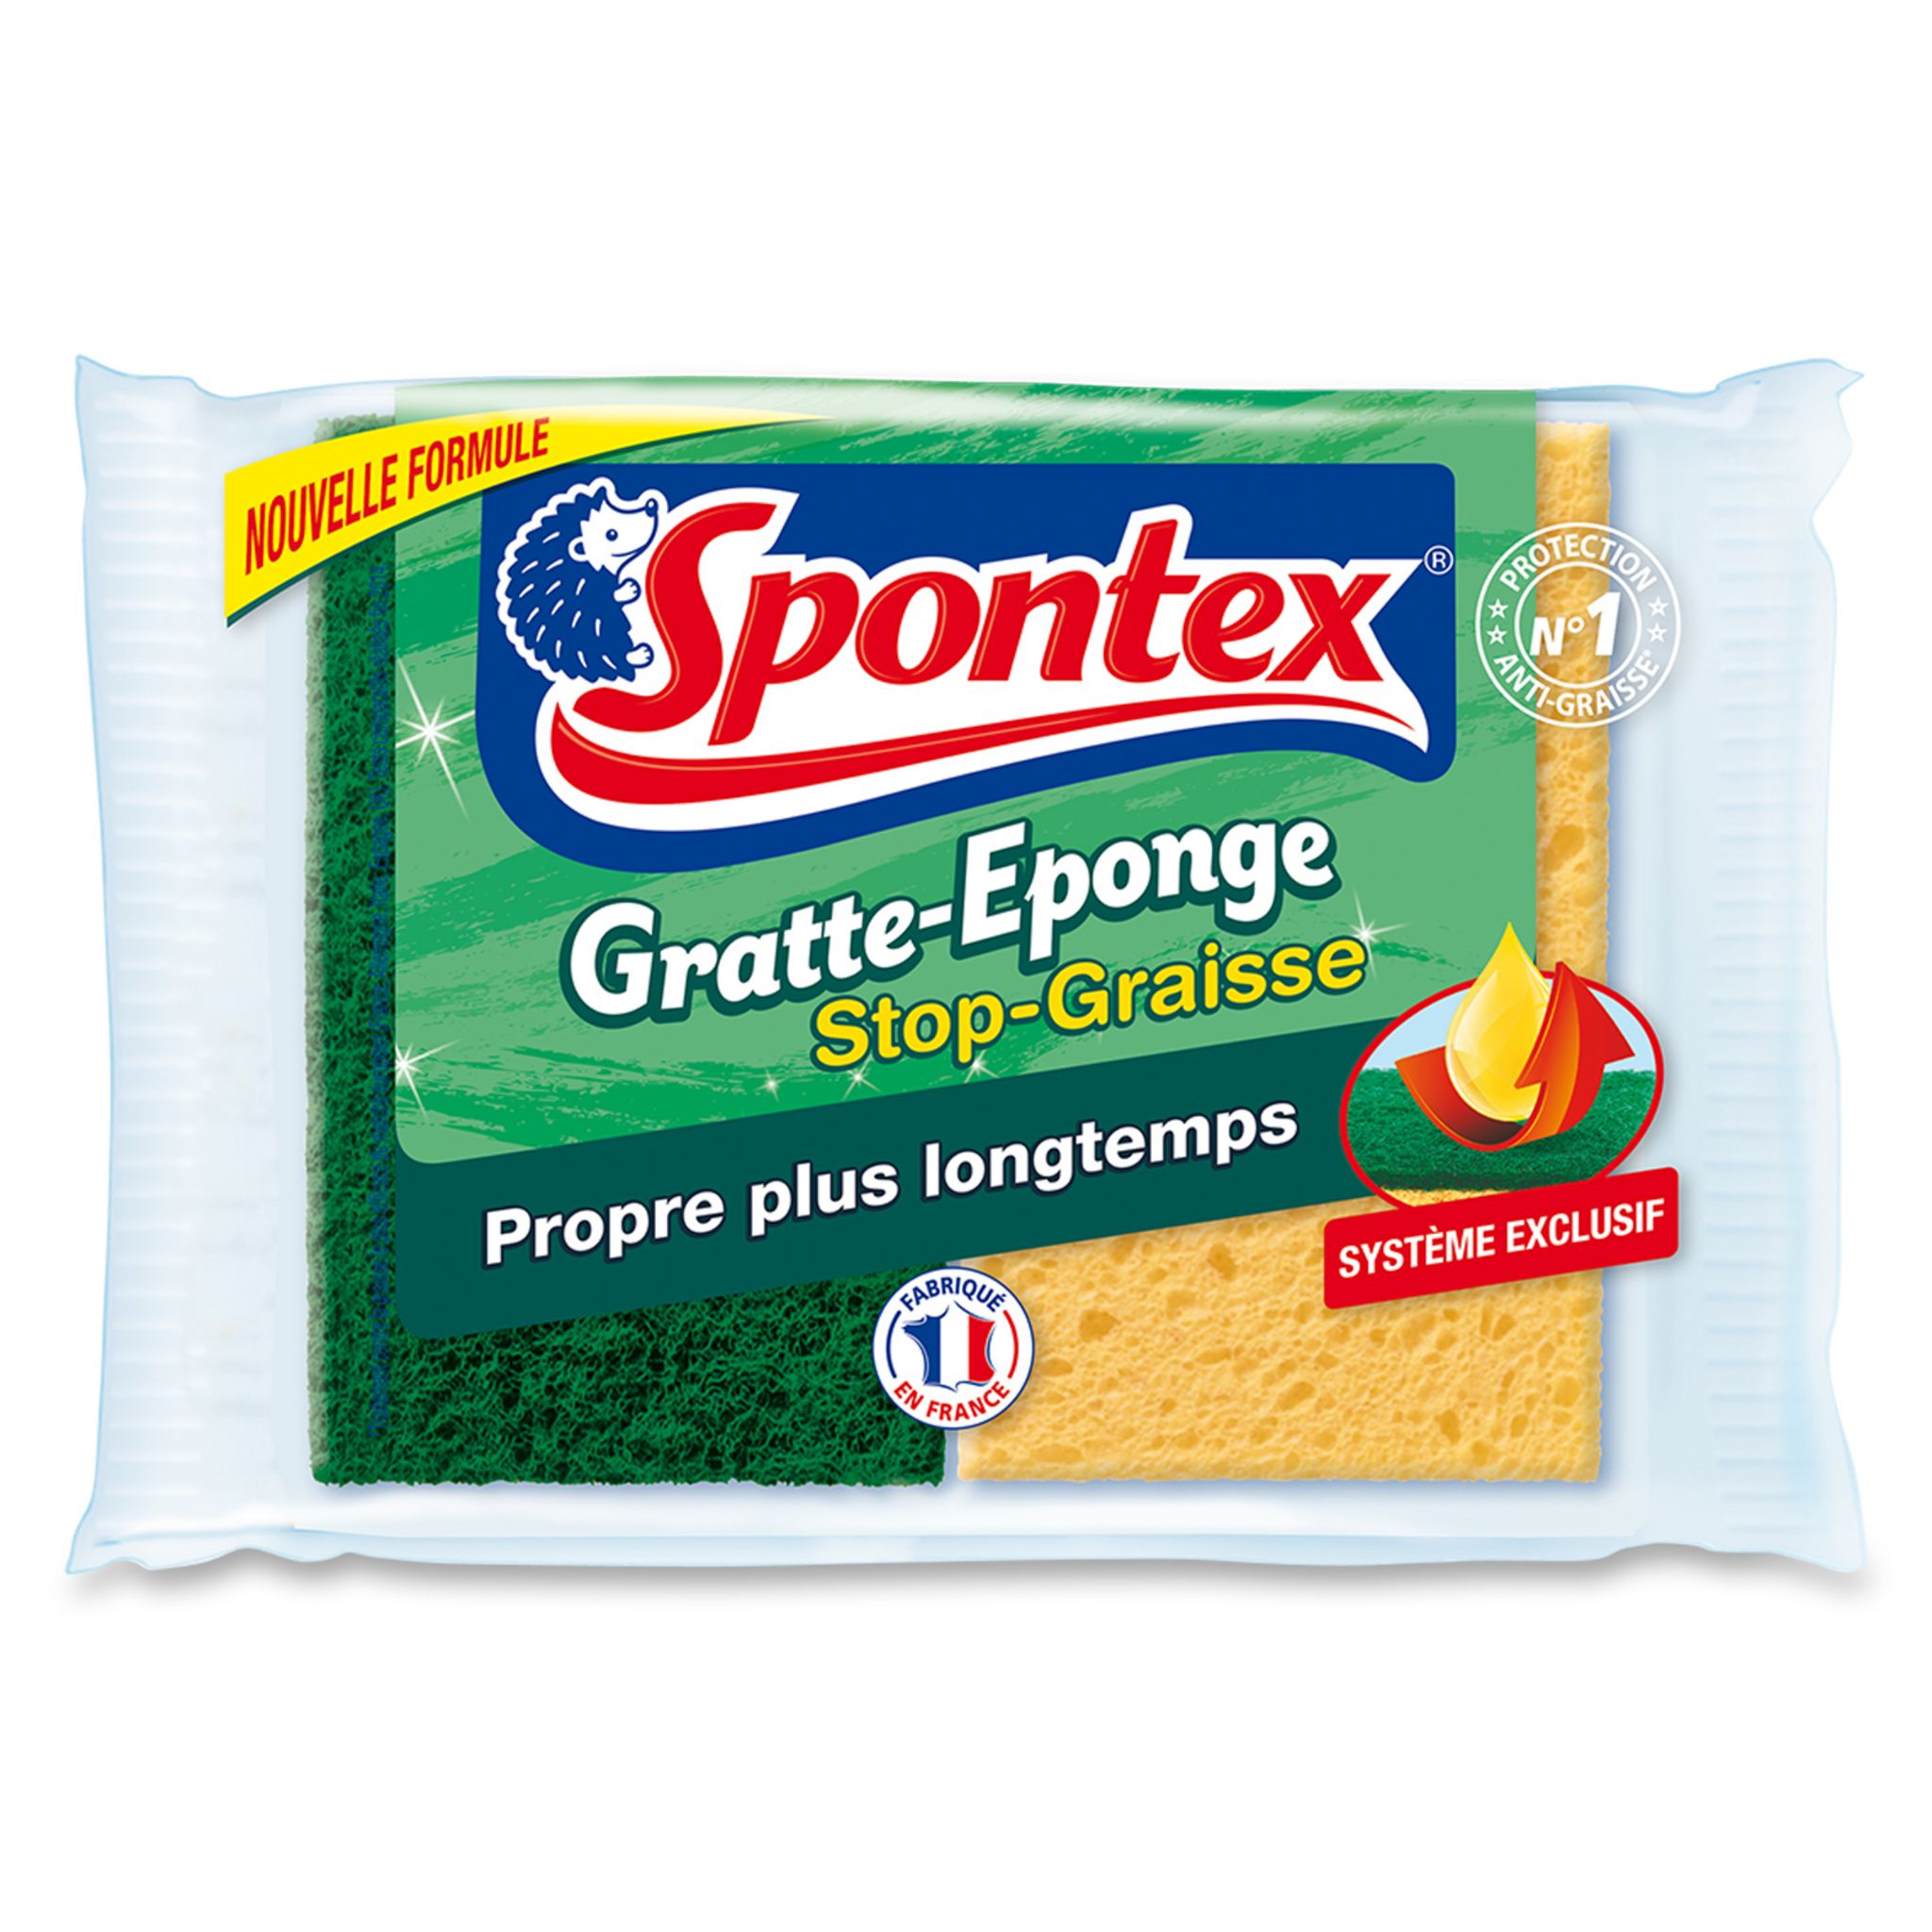 SPONTEX - 2 GRATTE EPONGES STOP GRAISSE - Les Indispensables au